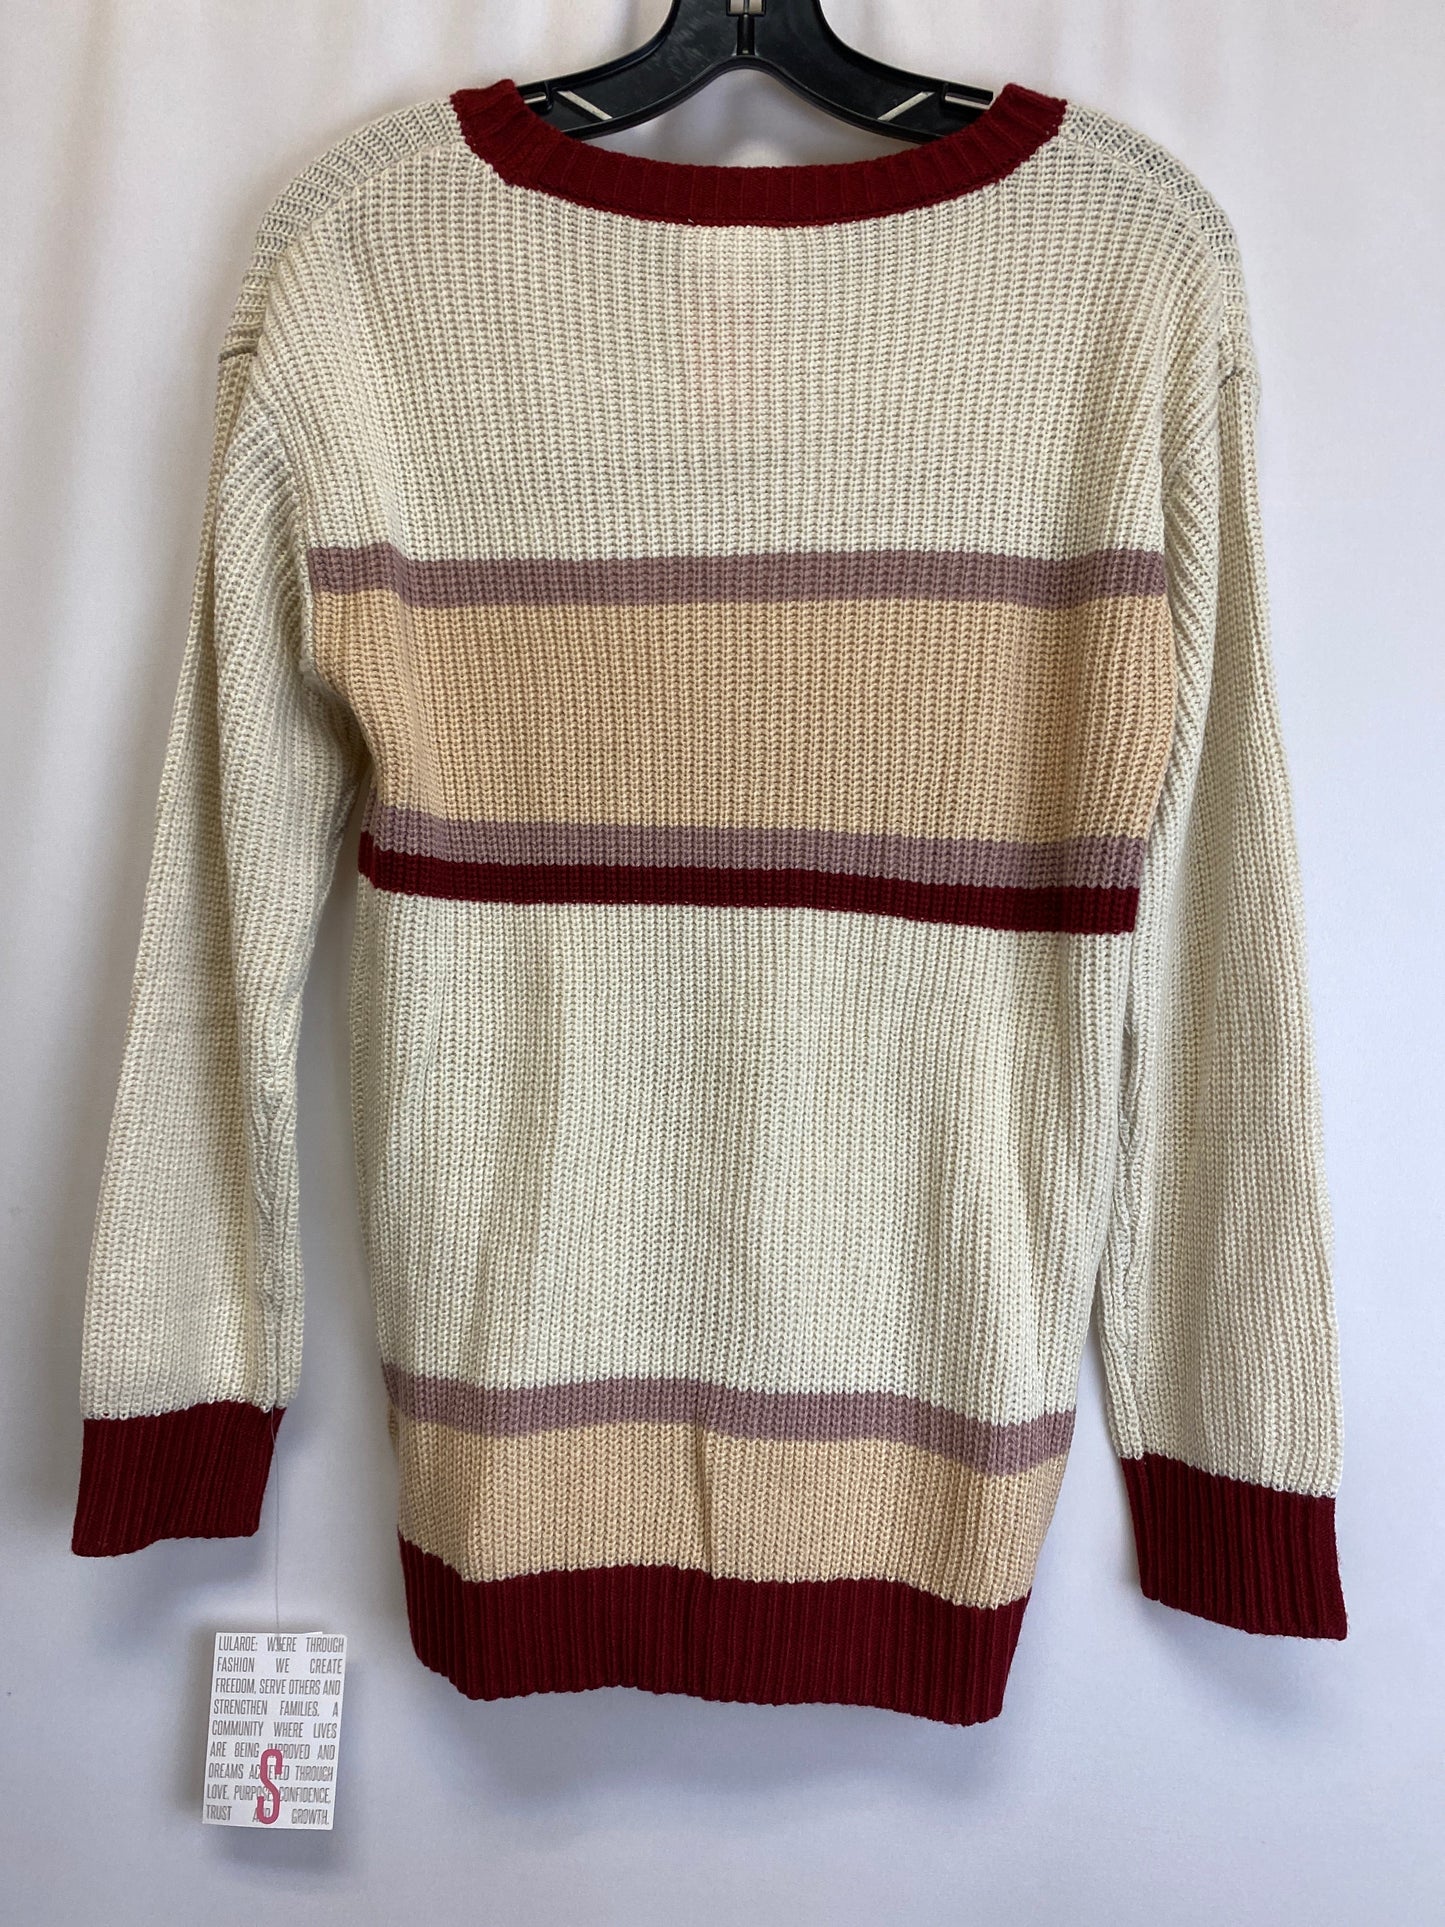 Sweater By Lularoe  Size: S